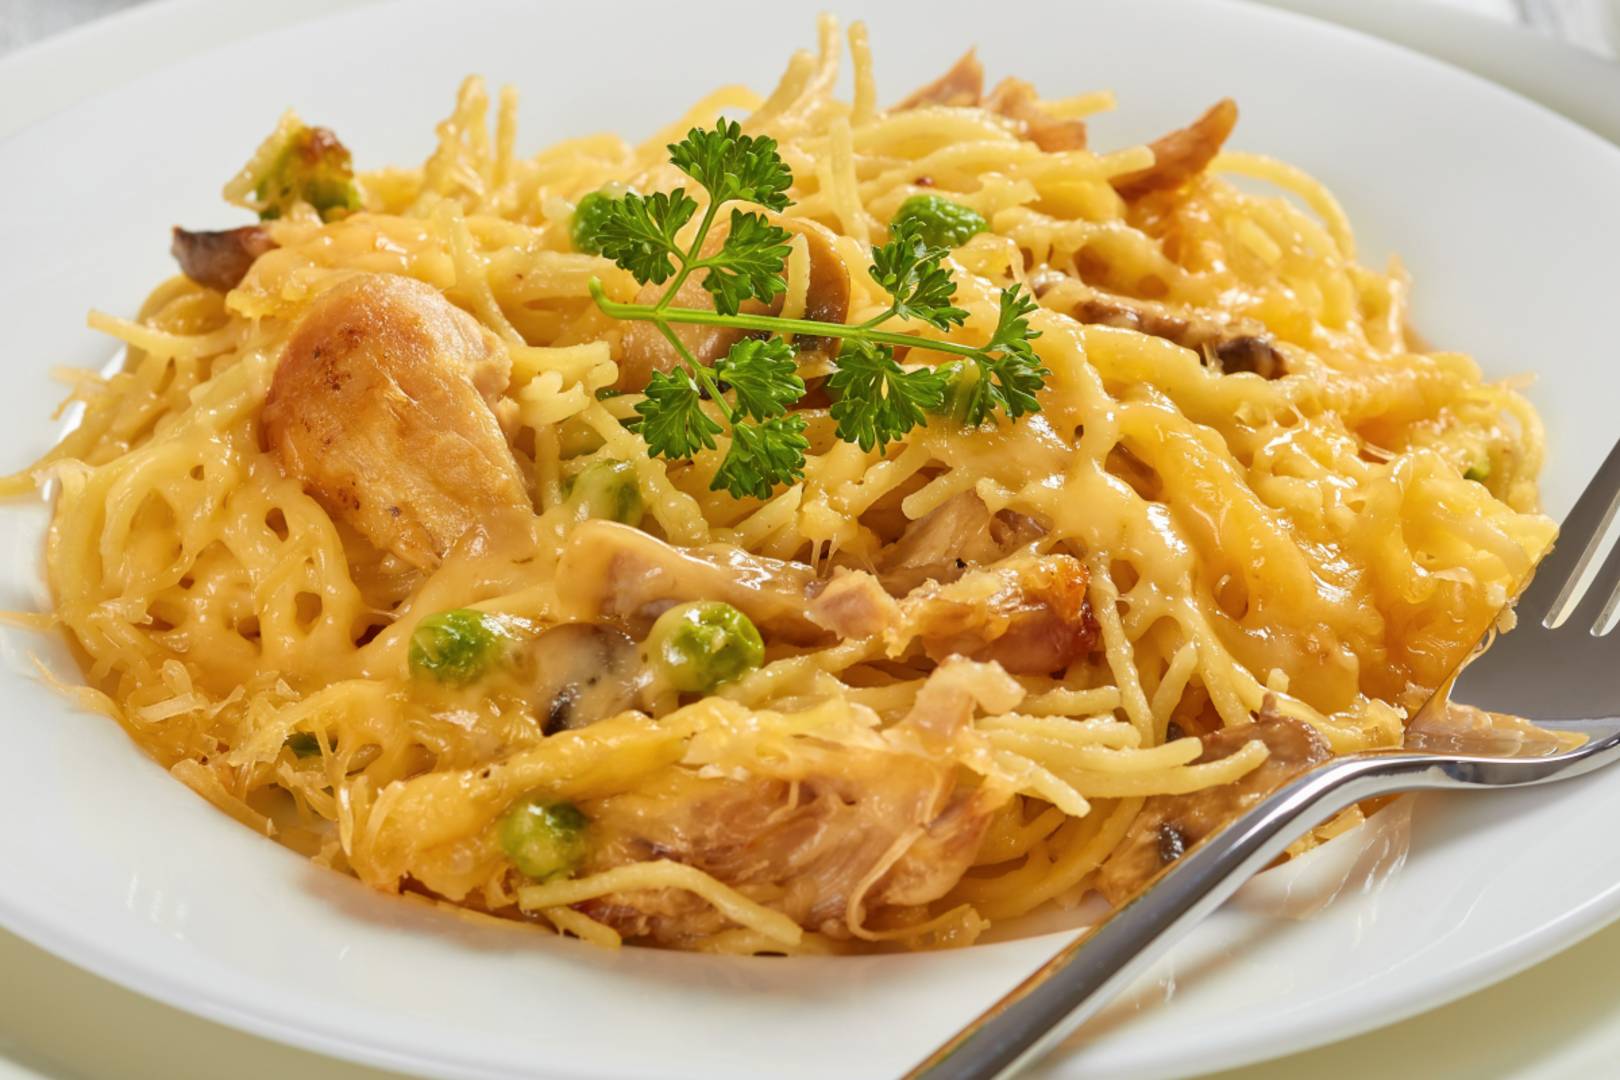 Krémes spagetti sütőben összesütve: csirke és zöldségek gazdagítják